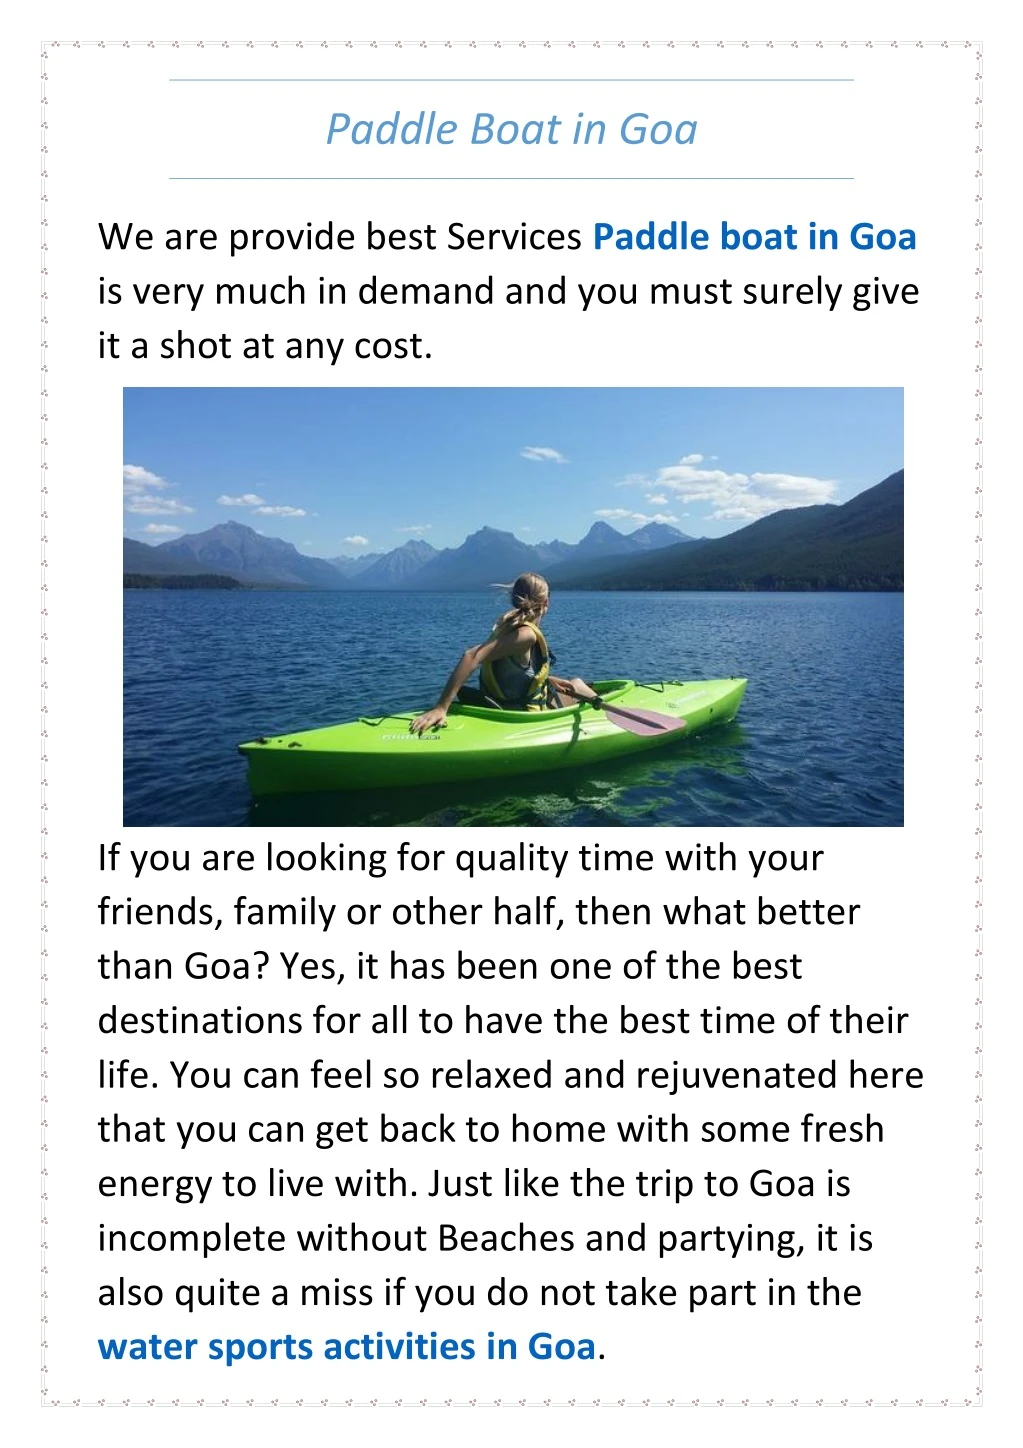 paddle boat in goa